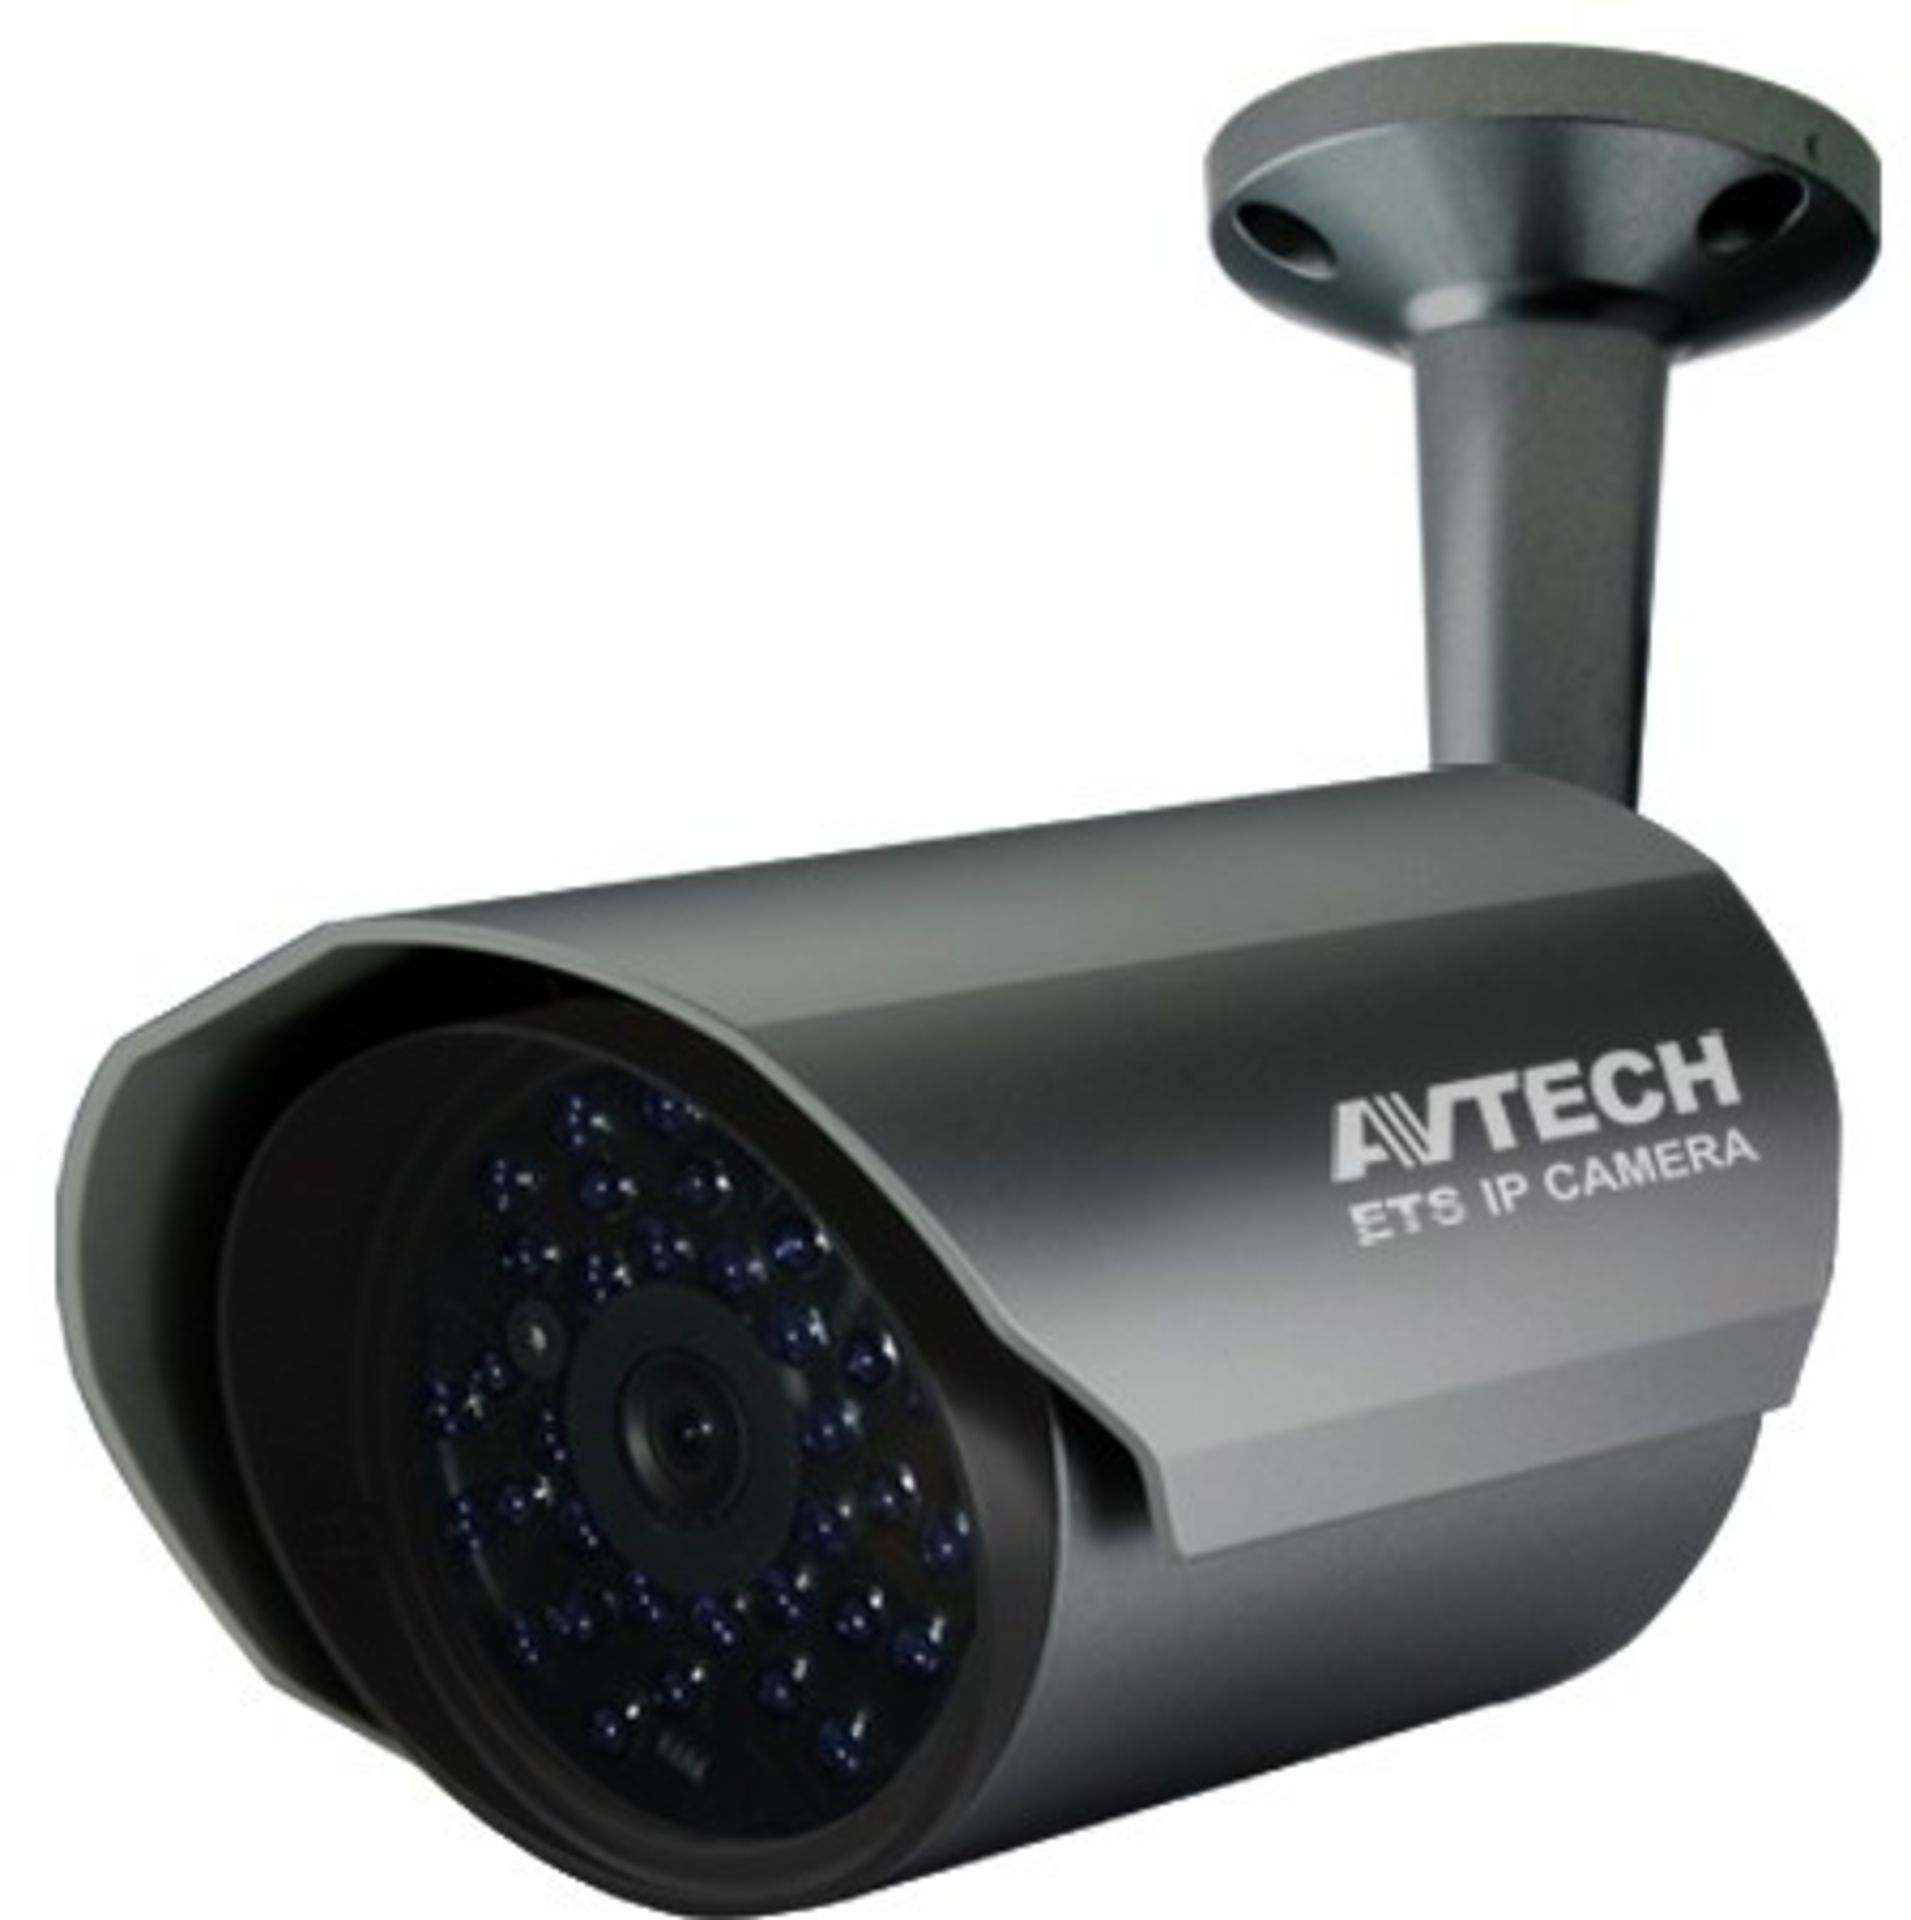 V Brand New Avtech IR Bullet IP Camera - 20m Night Vision -IP67